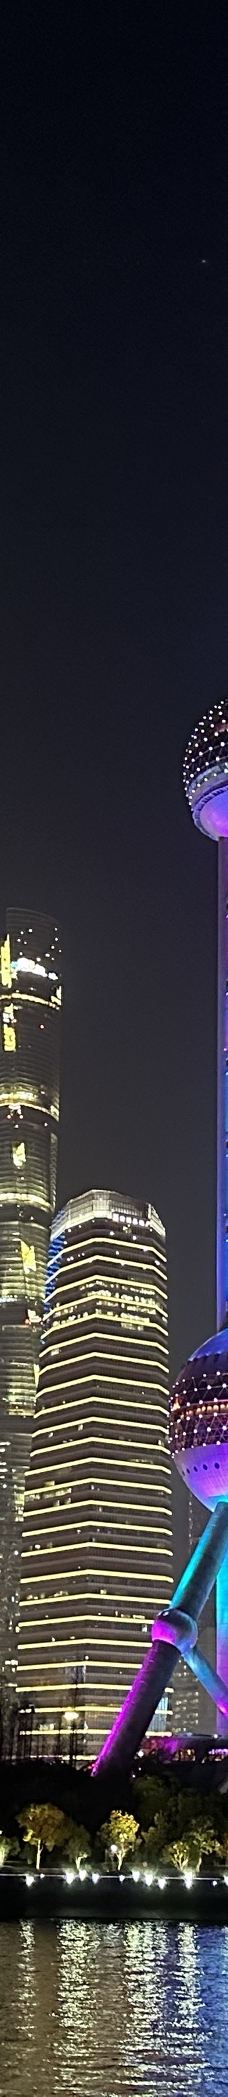 黄浦江游览(十六铺码头)-上海-201****120